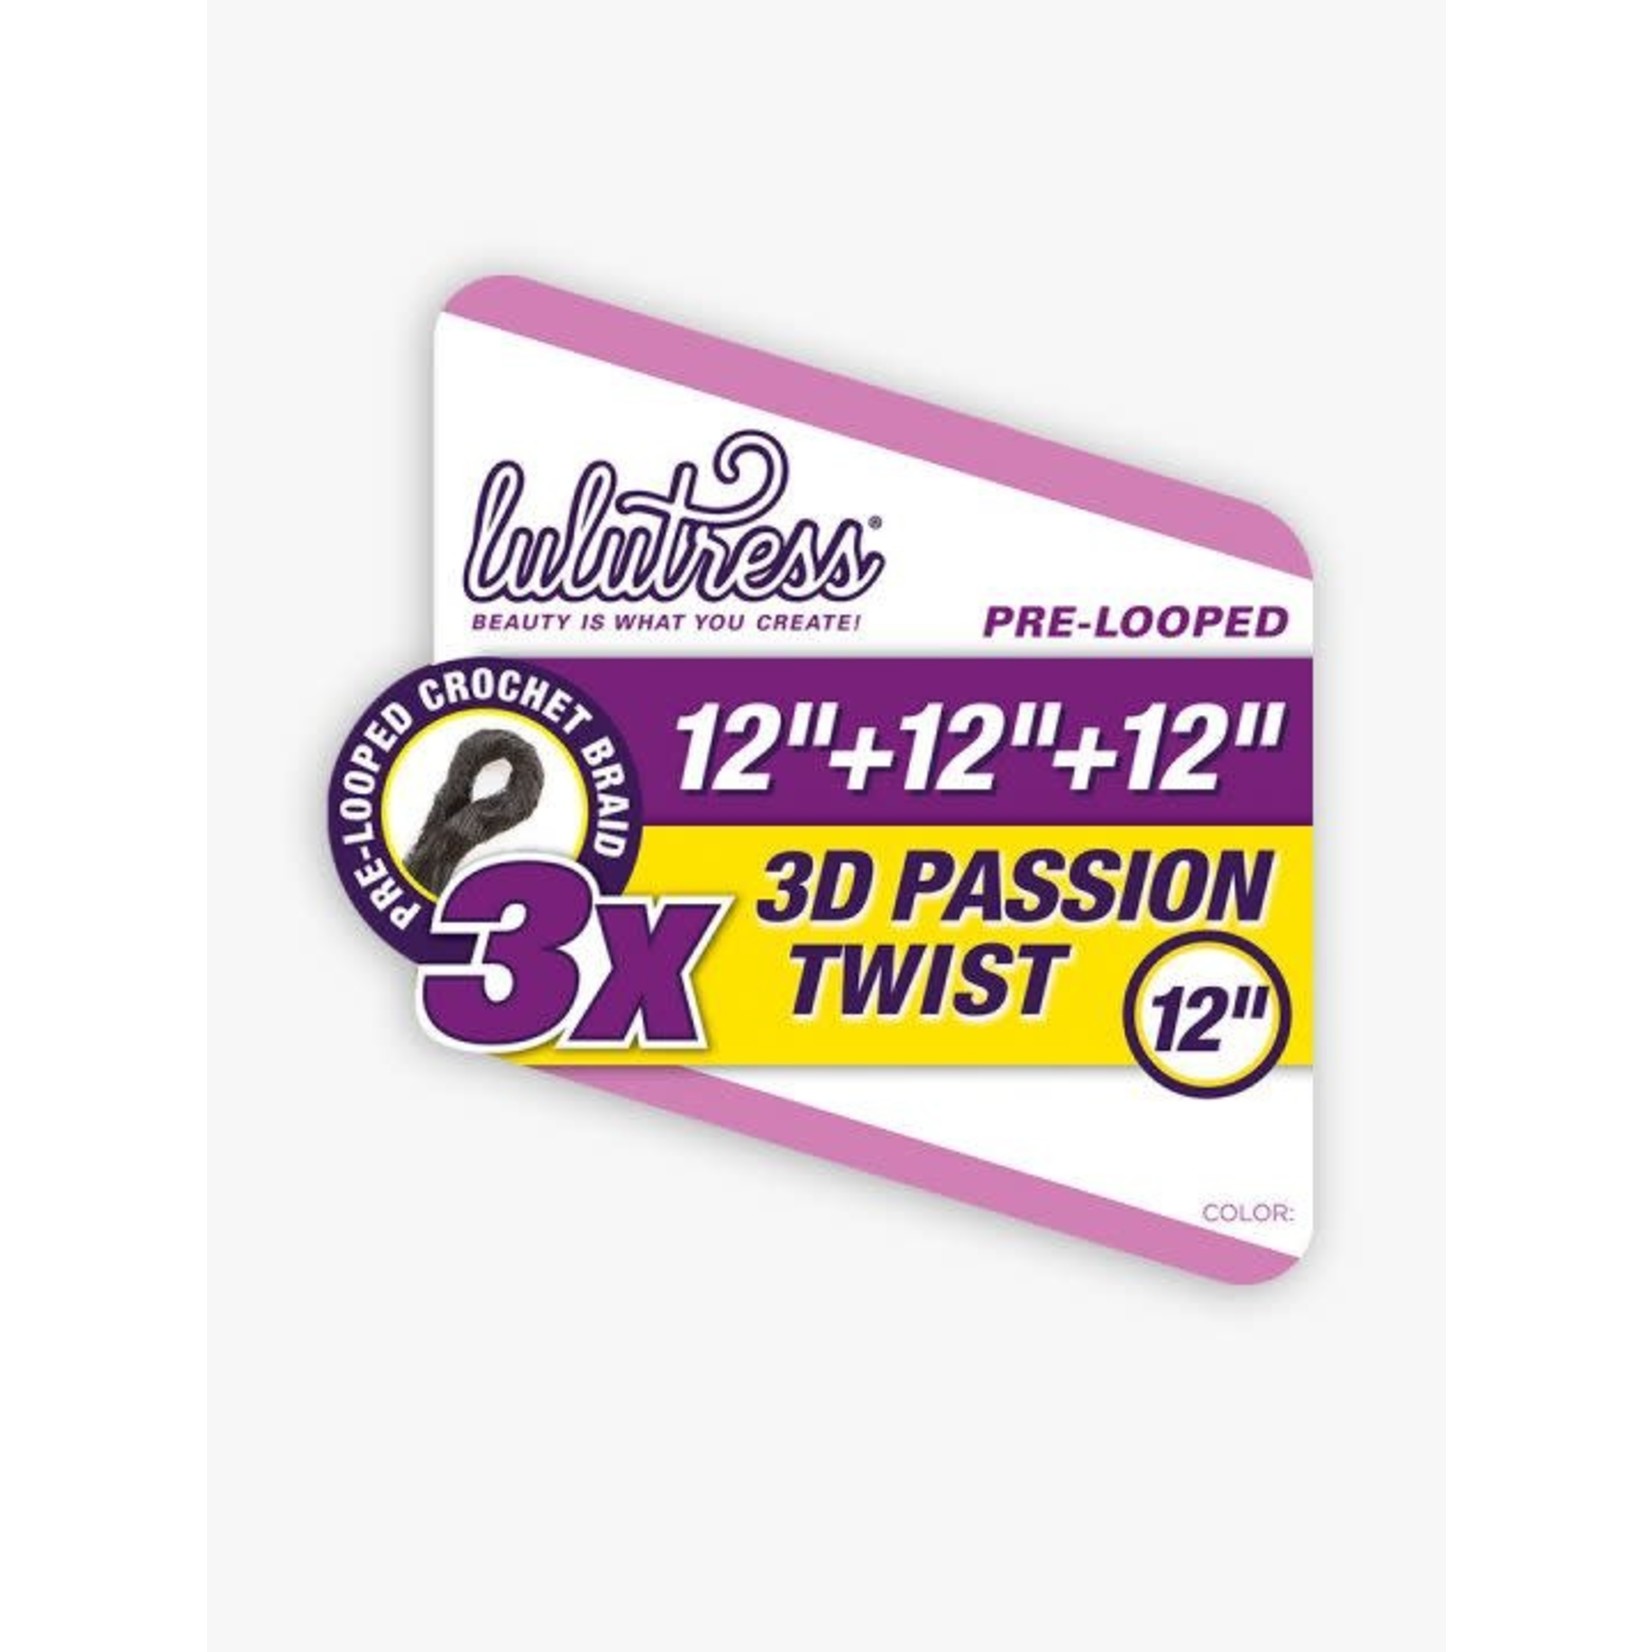 Sensationnel 3X 3D Passion Twist 12"